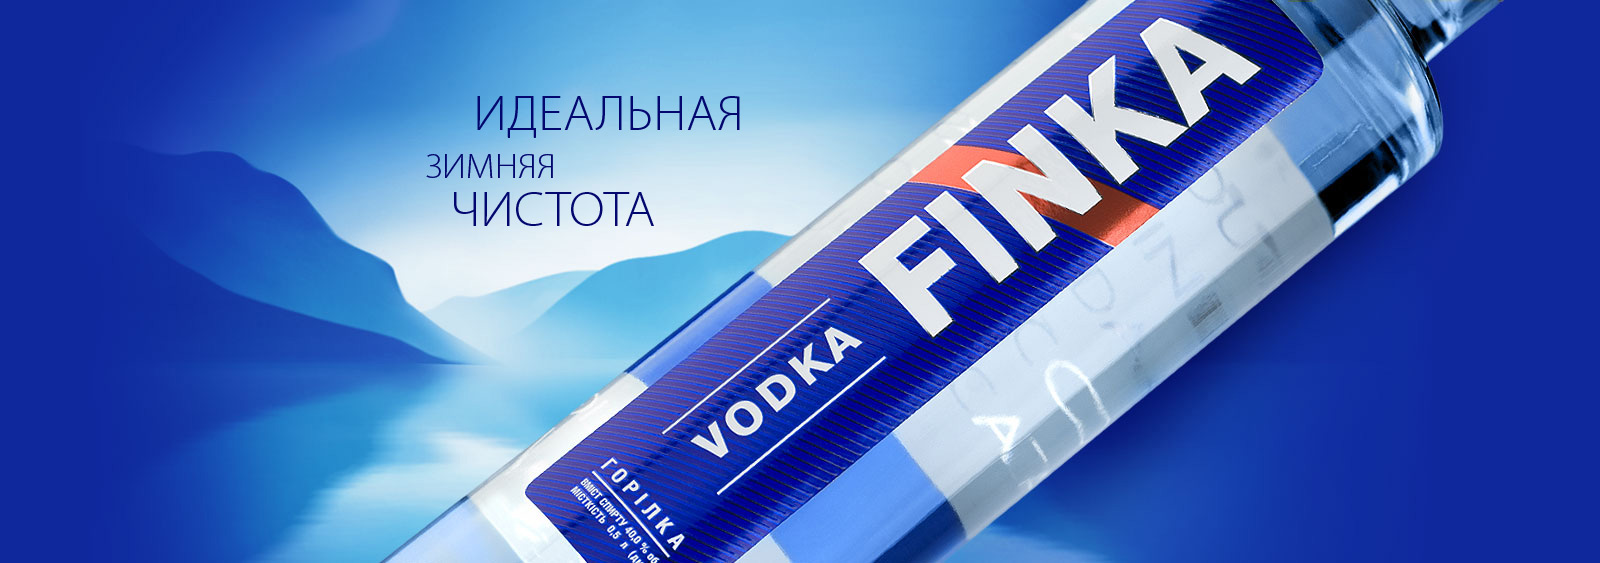 FINKA vodka. Label design.